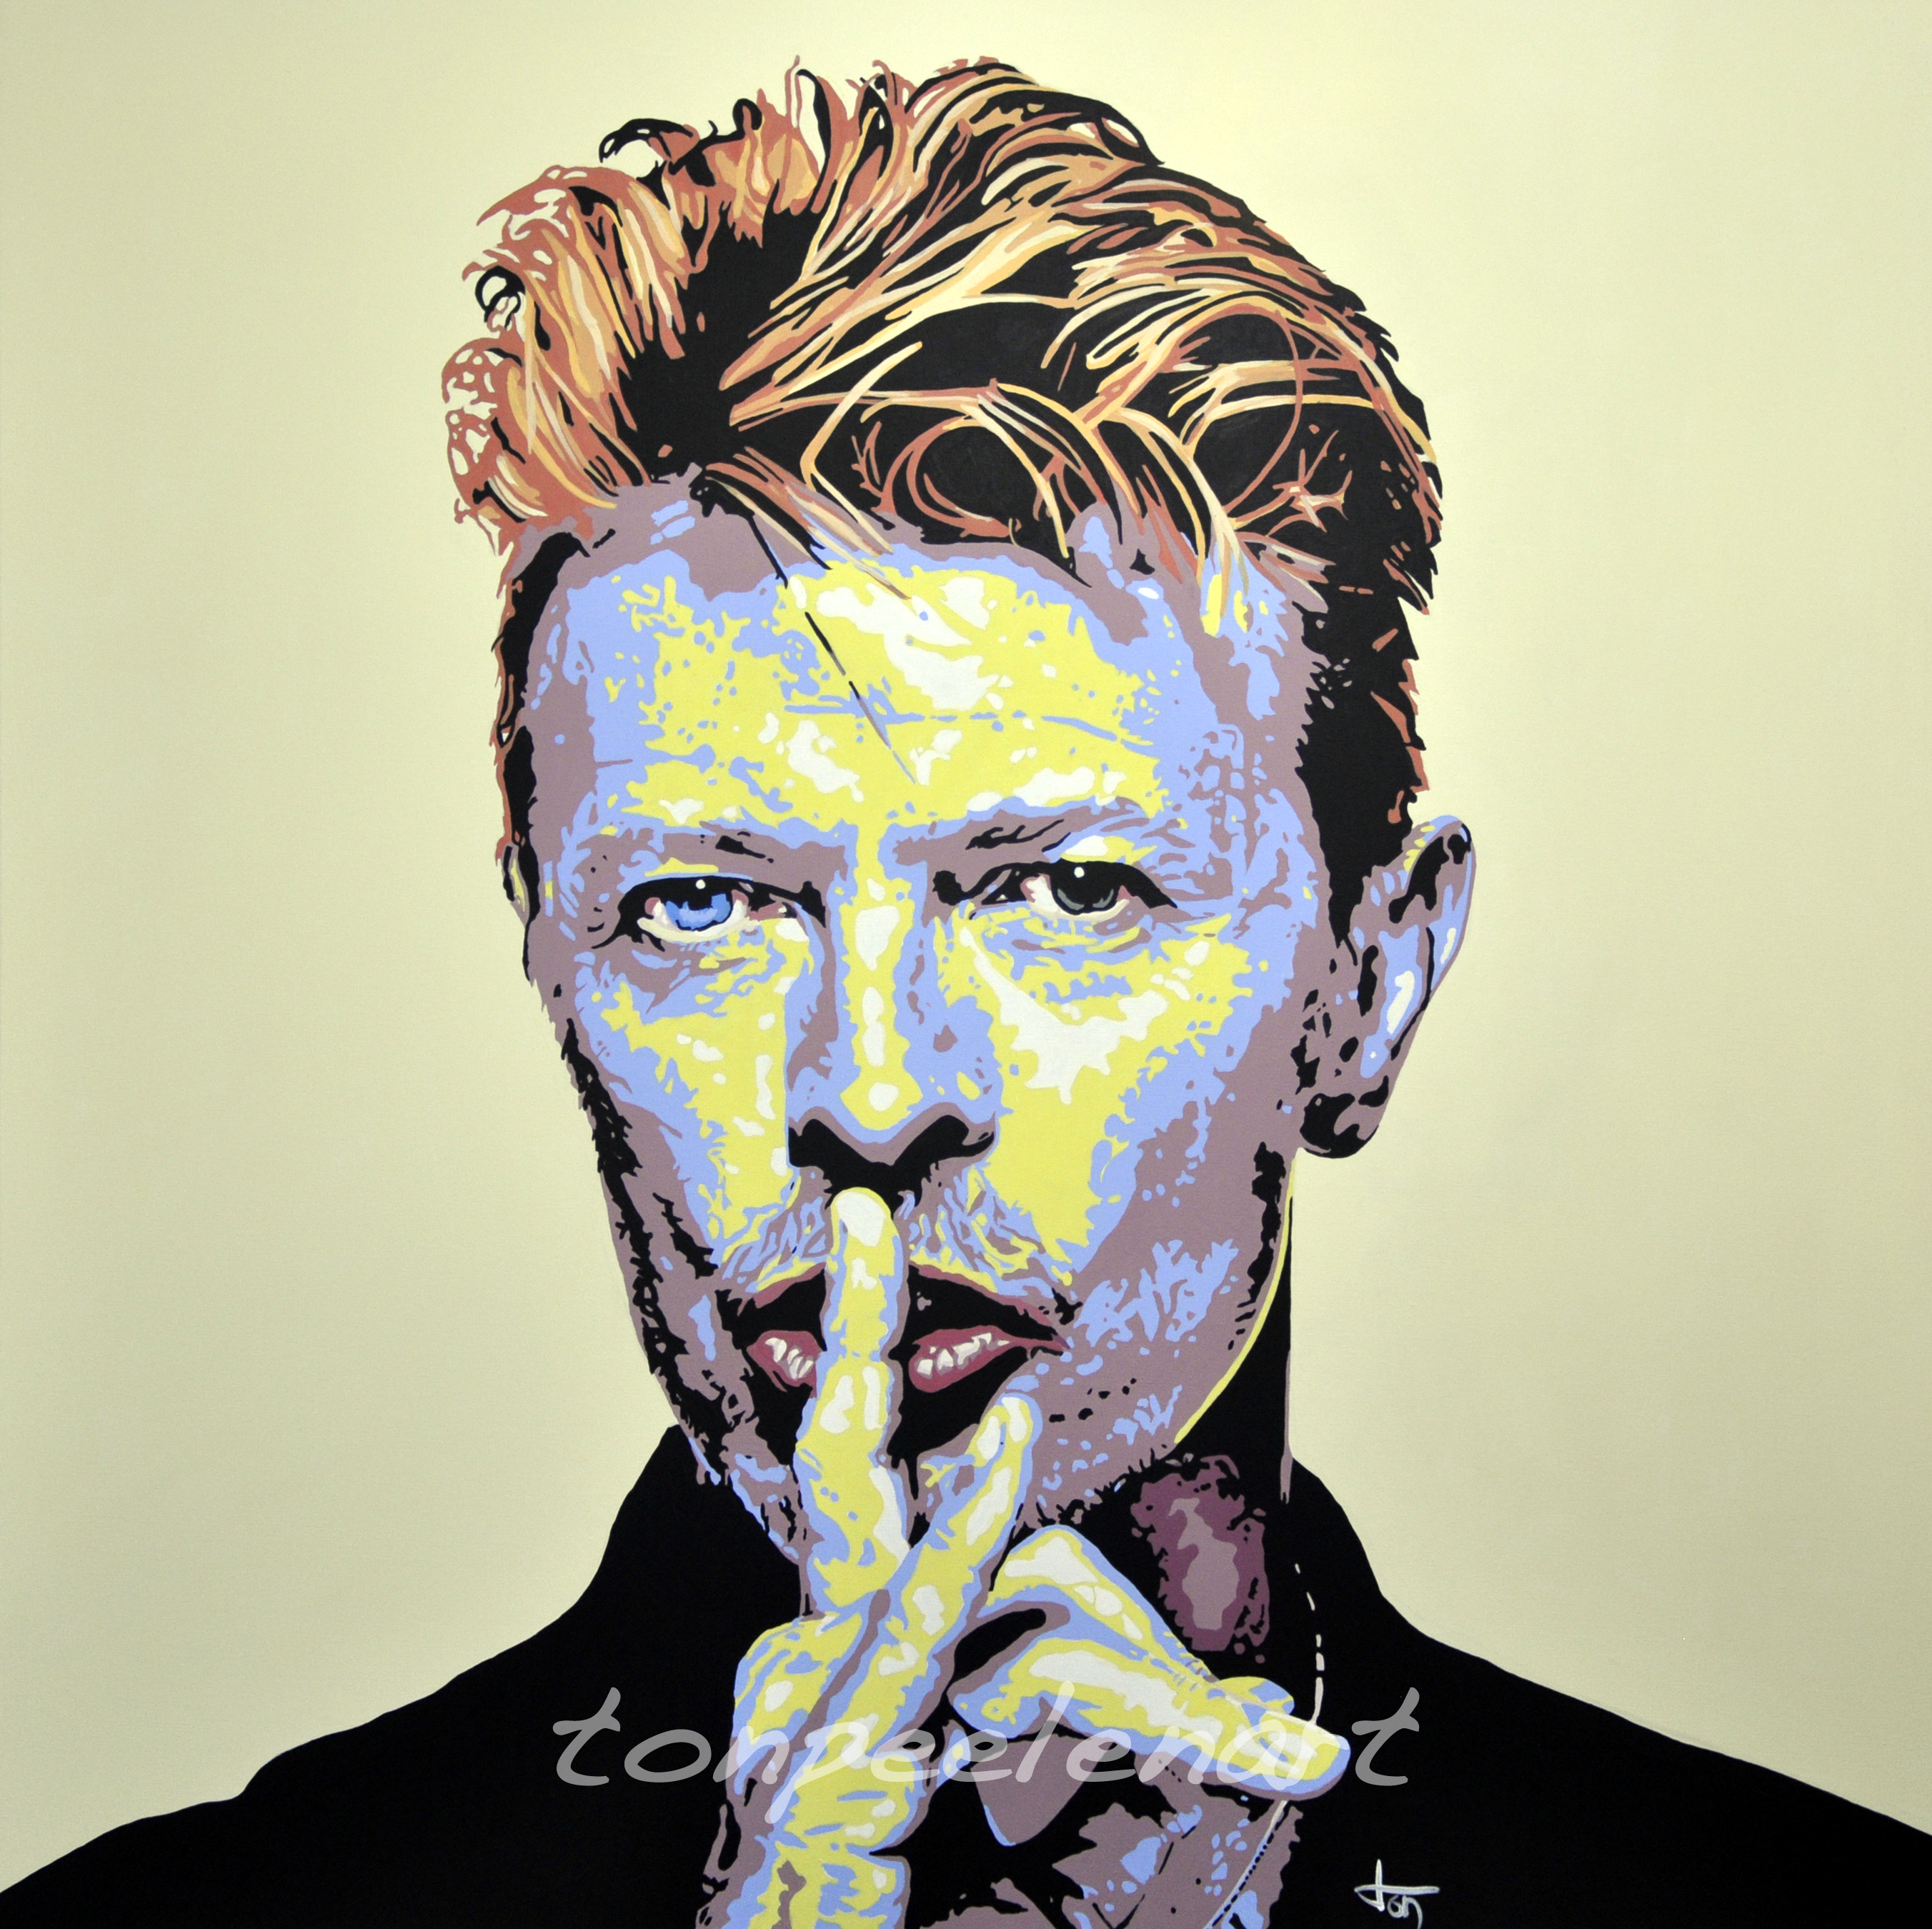 David Bowie by Ton Peelen